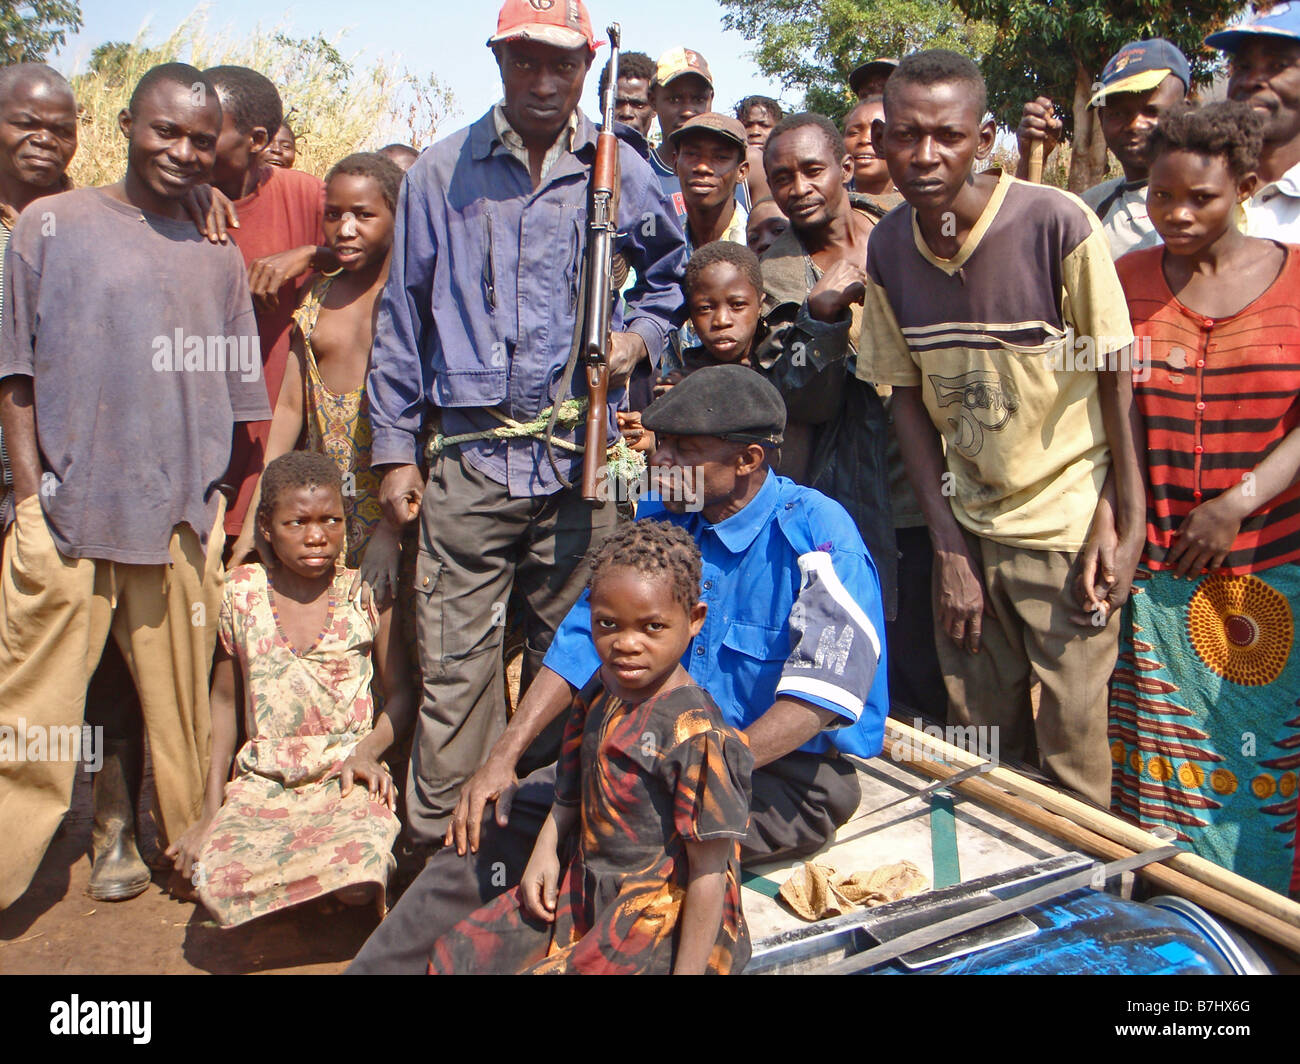 Congo people immagini e fotografie stock ad alta risoluzione - Alamy